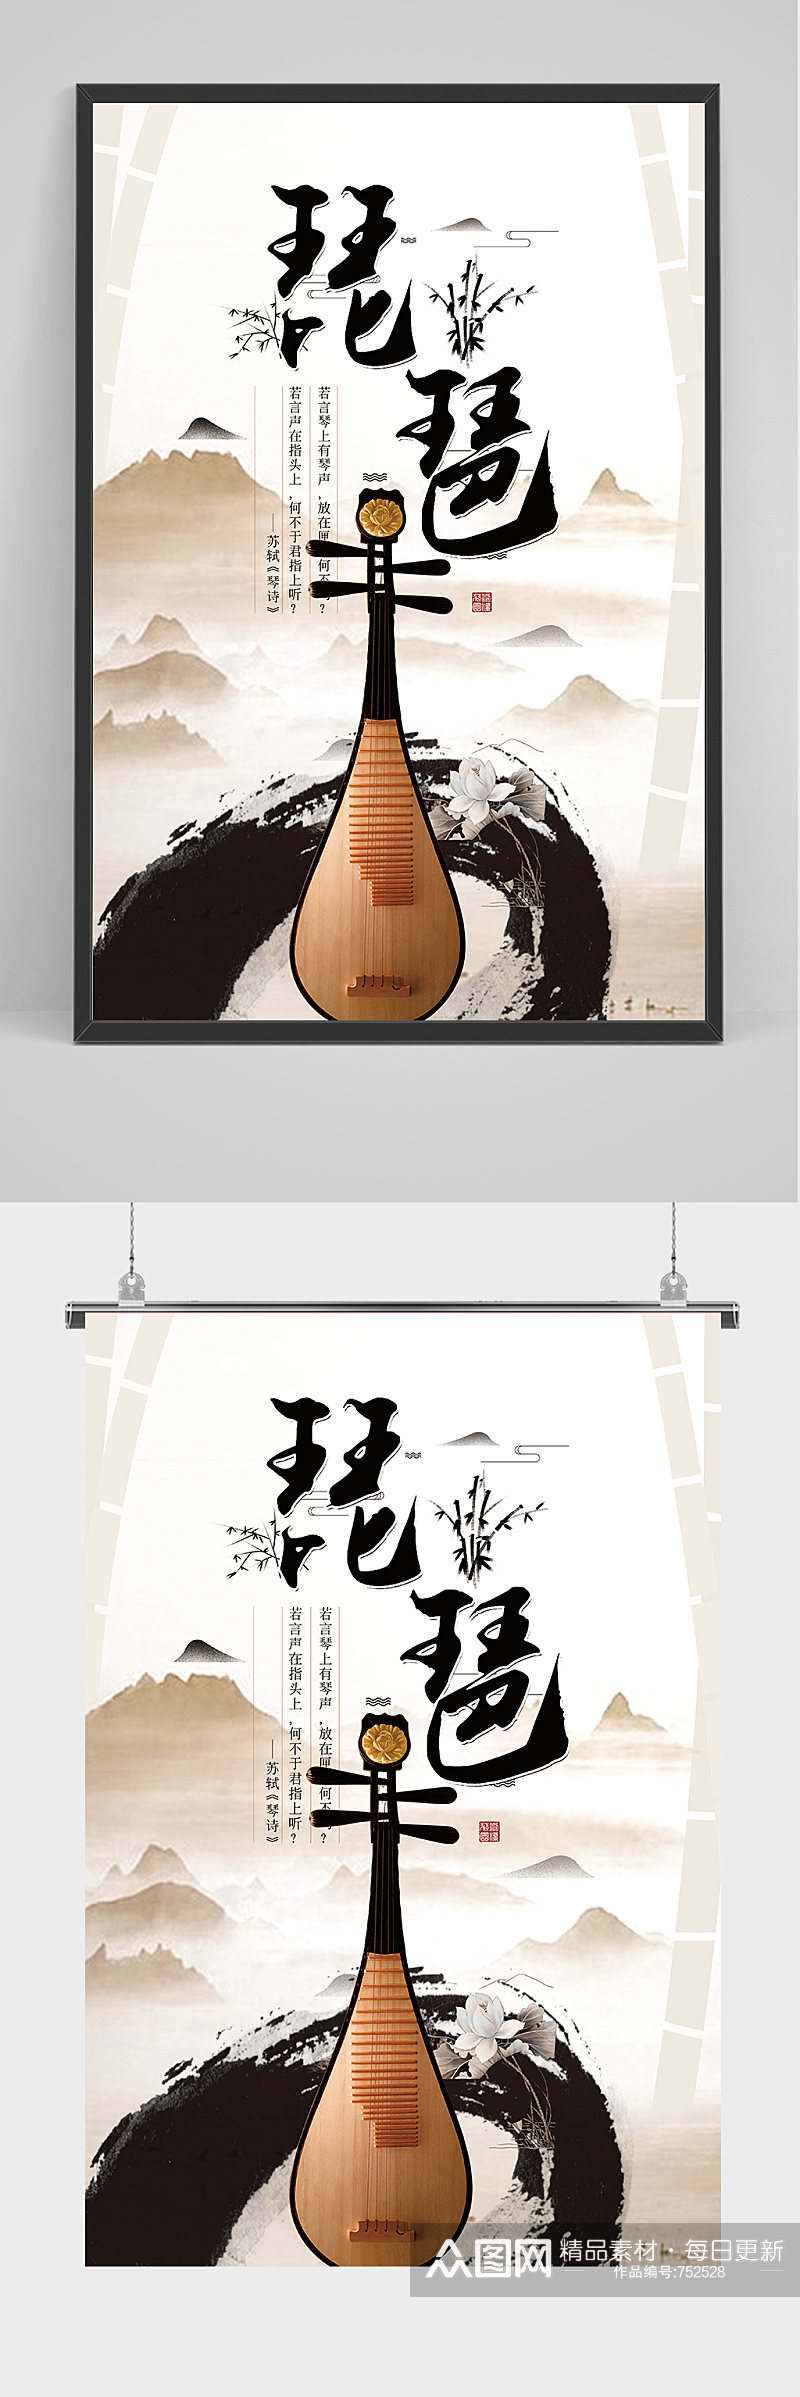 简约中国风琵琶乐器海报素材